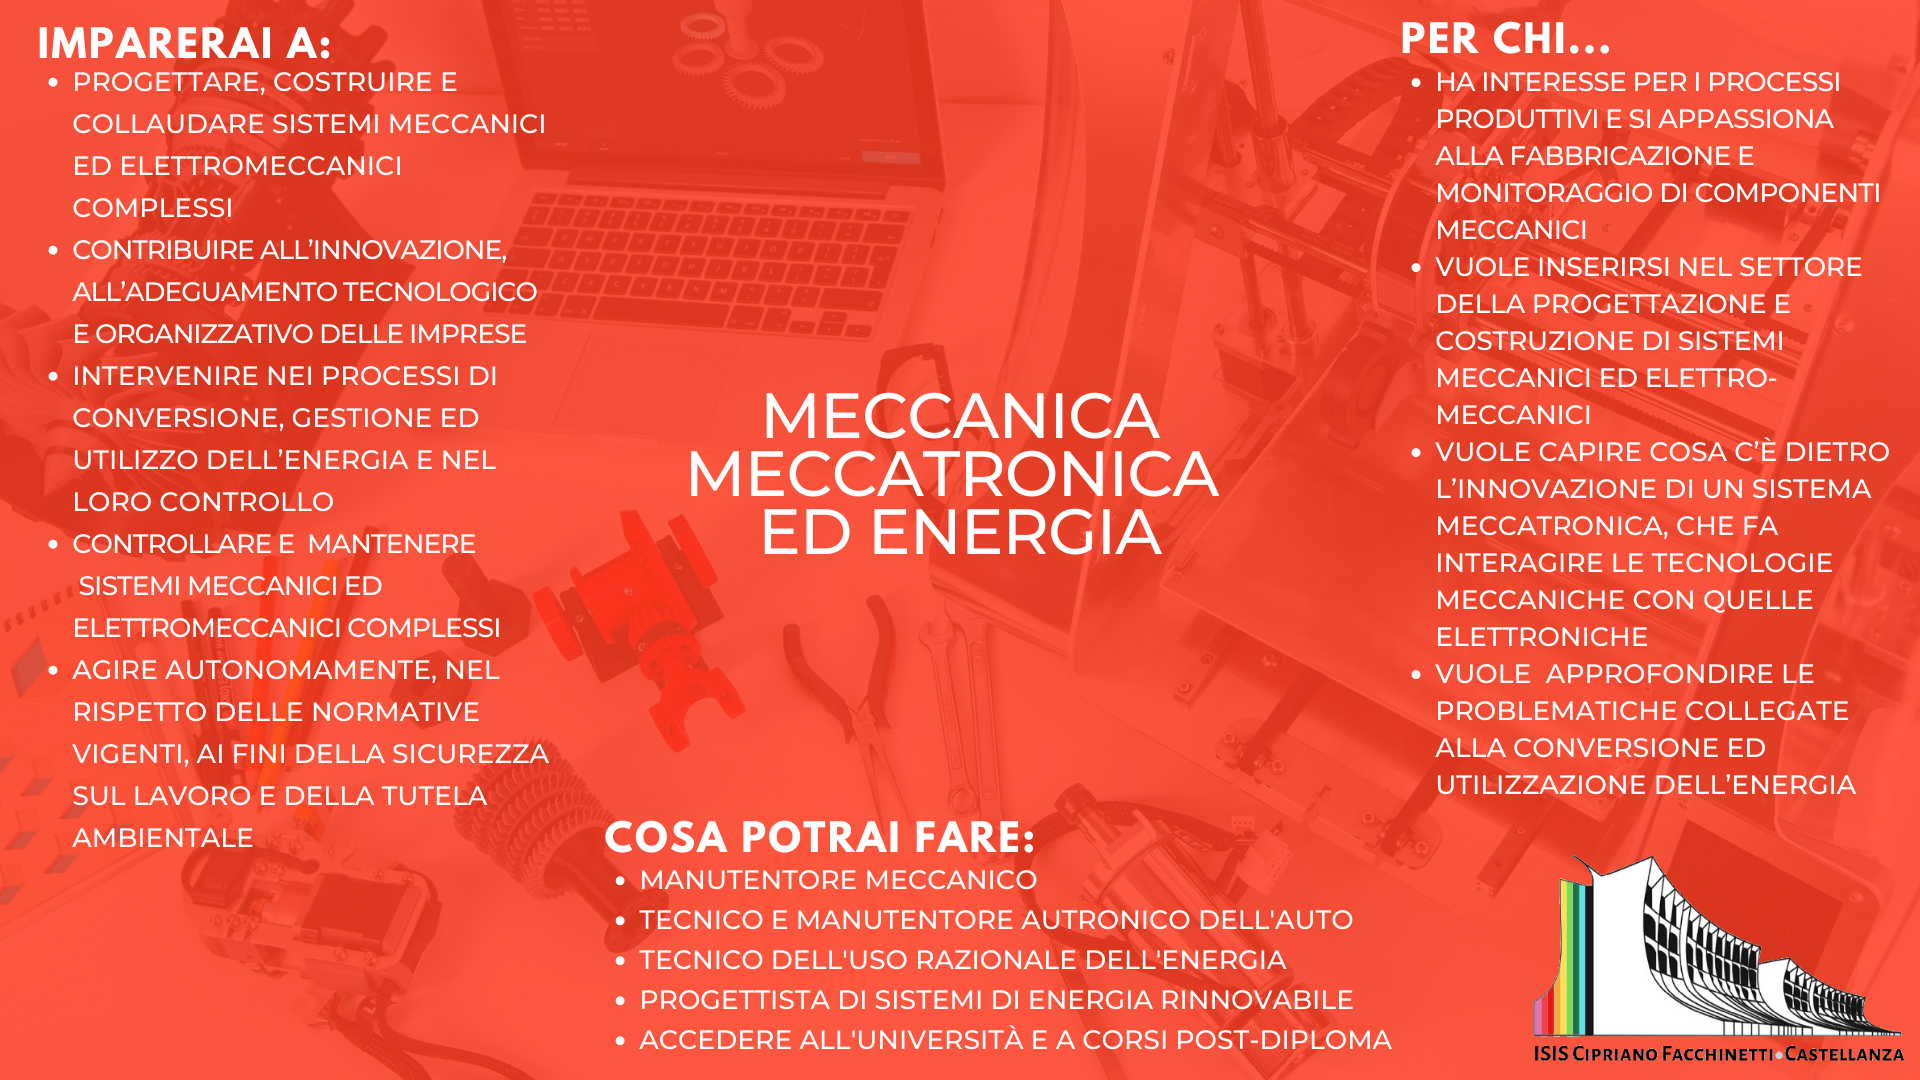 MECCATRONICA ED ENERGIA